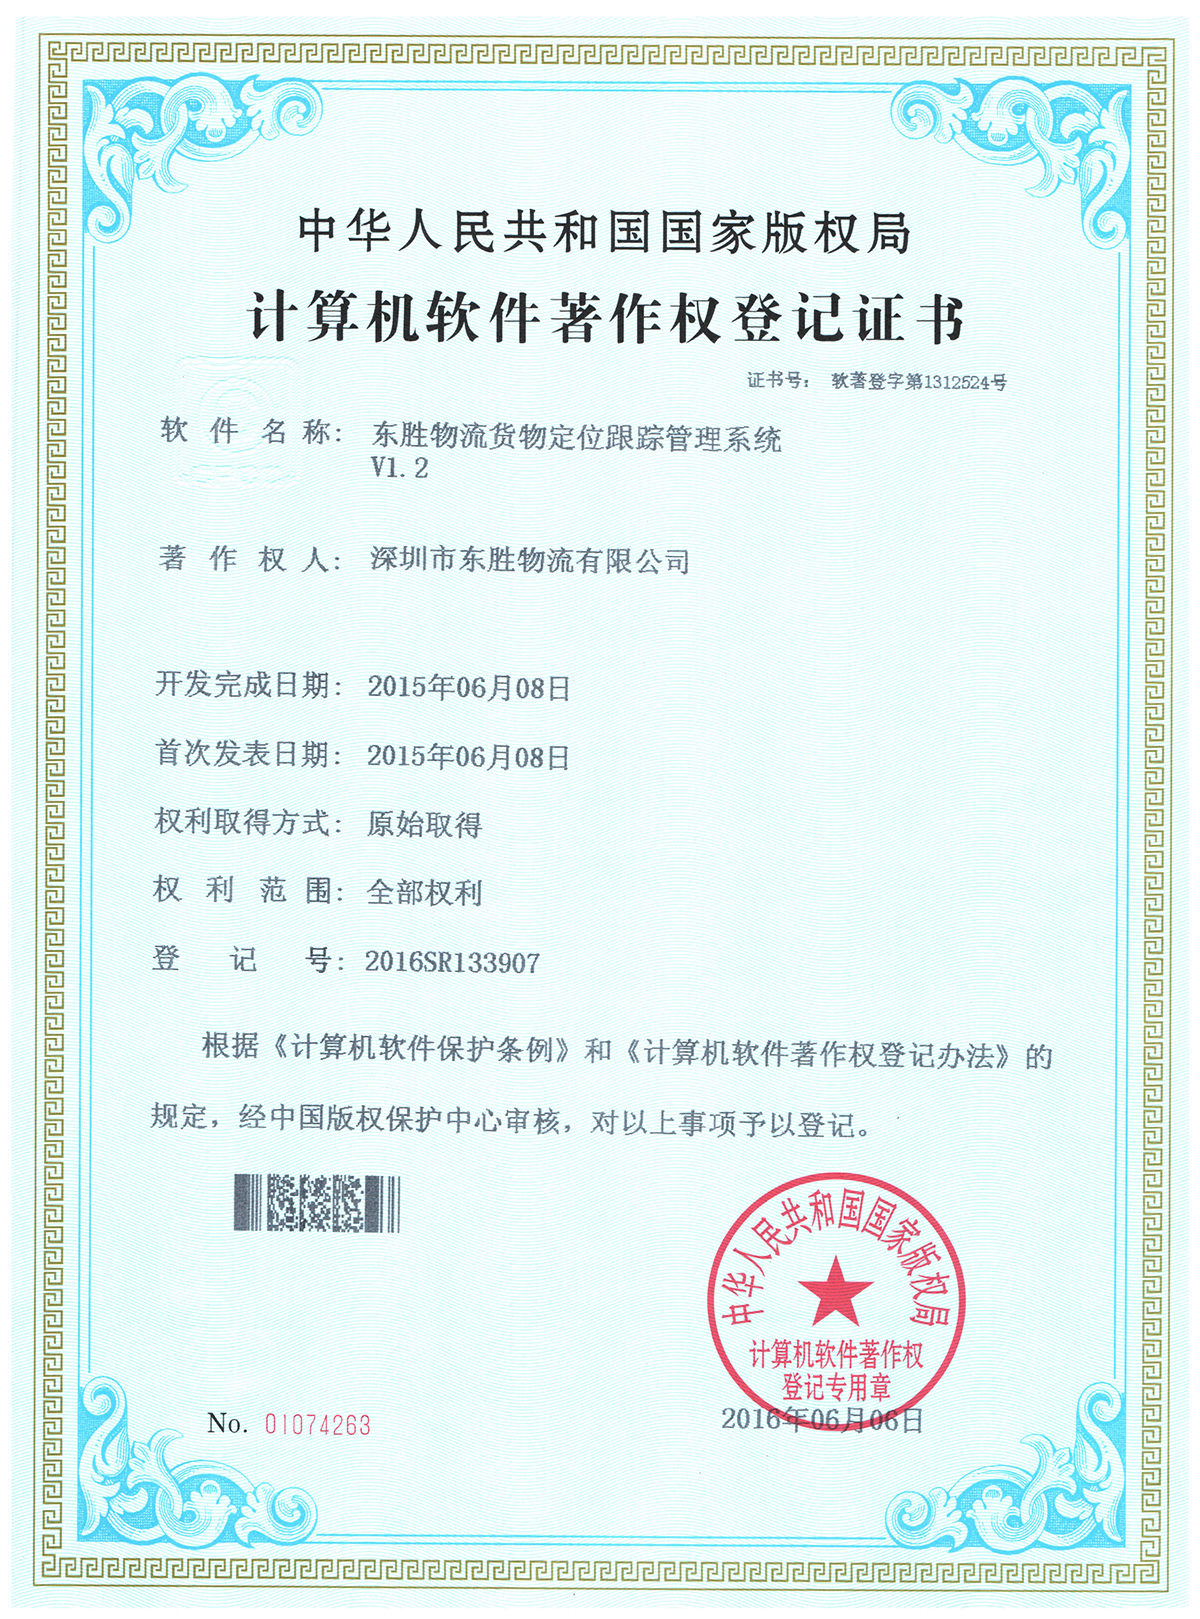 东胜物流货物跟踪软件著作权登记证书